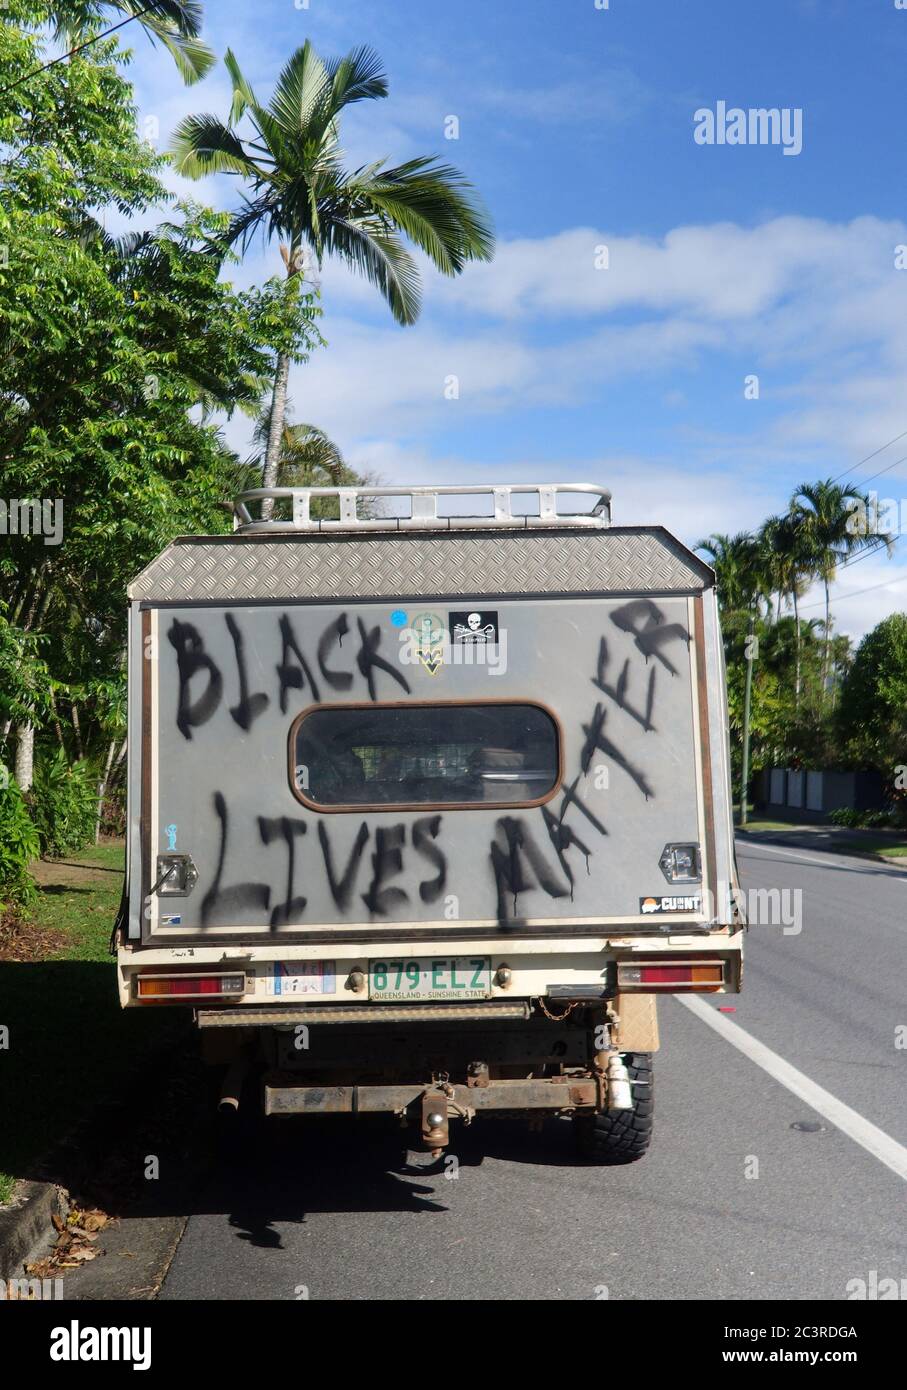 Spray « Black Lives Matter » peint à l’arrière de la voiture, Cairns, Queensland, Australie. Pas de PR Banque D'Images